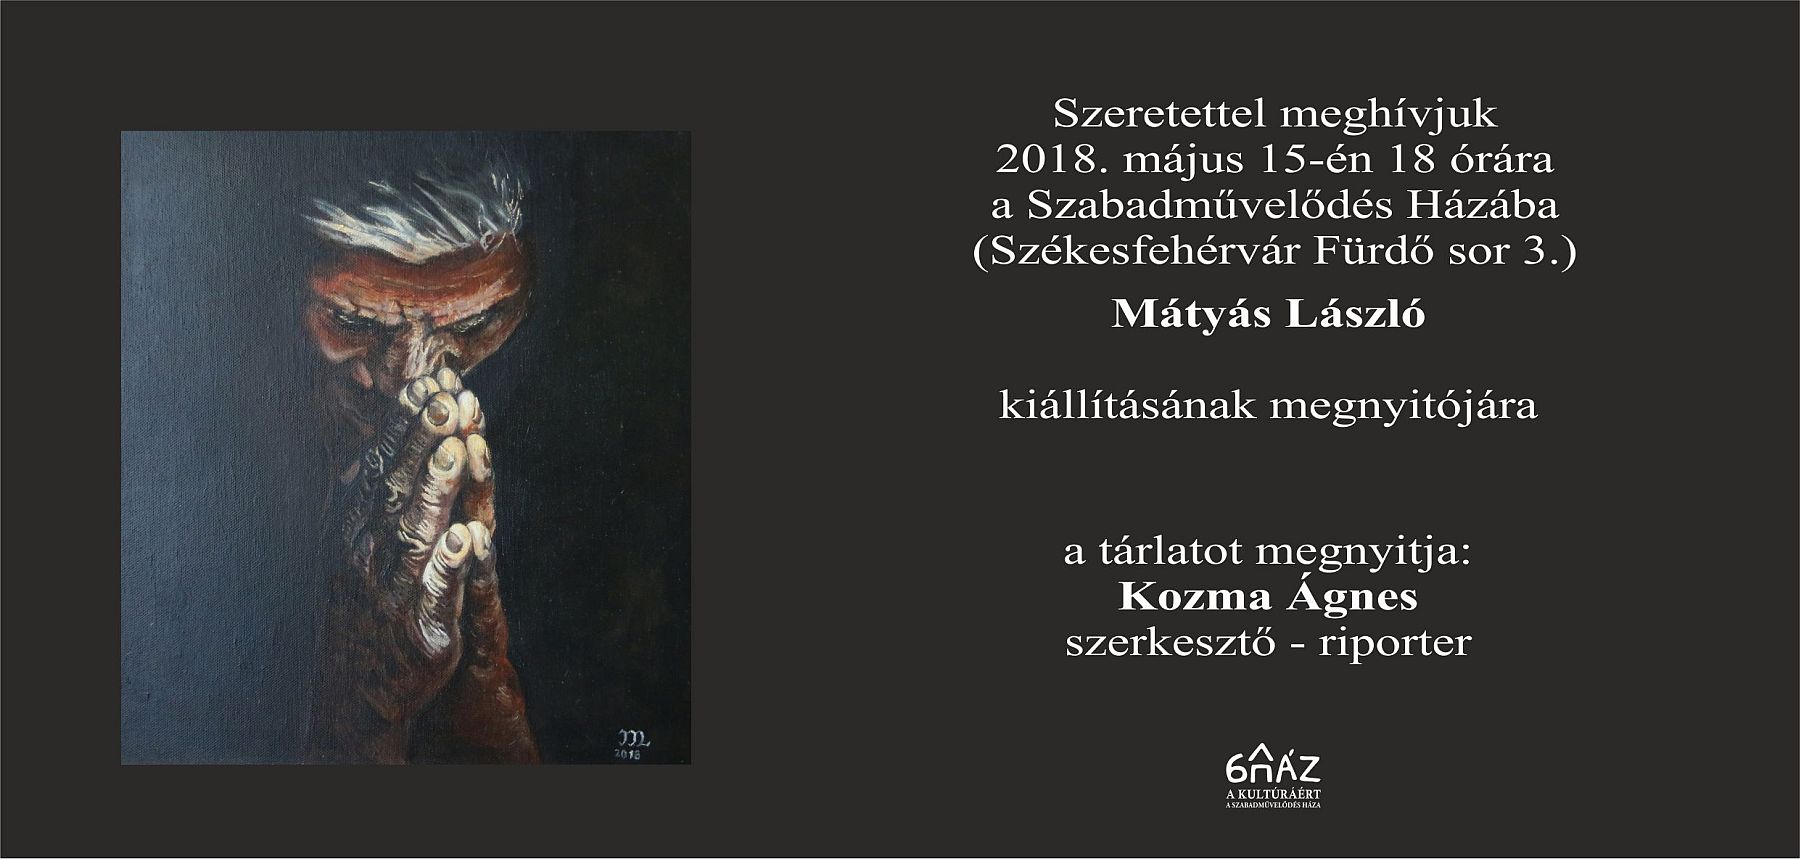 Kedden lesz Mátyás László kiállításának megnyitója